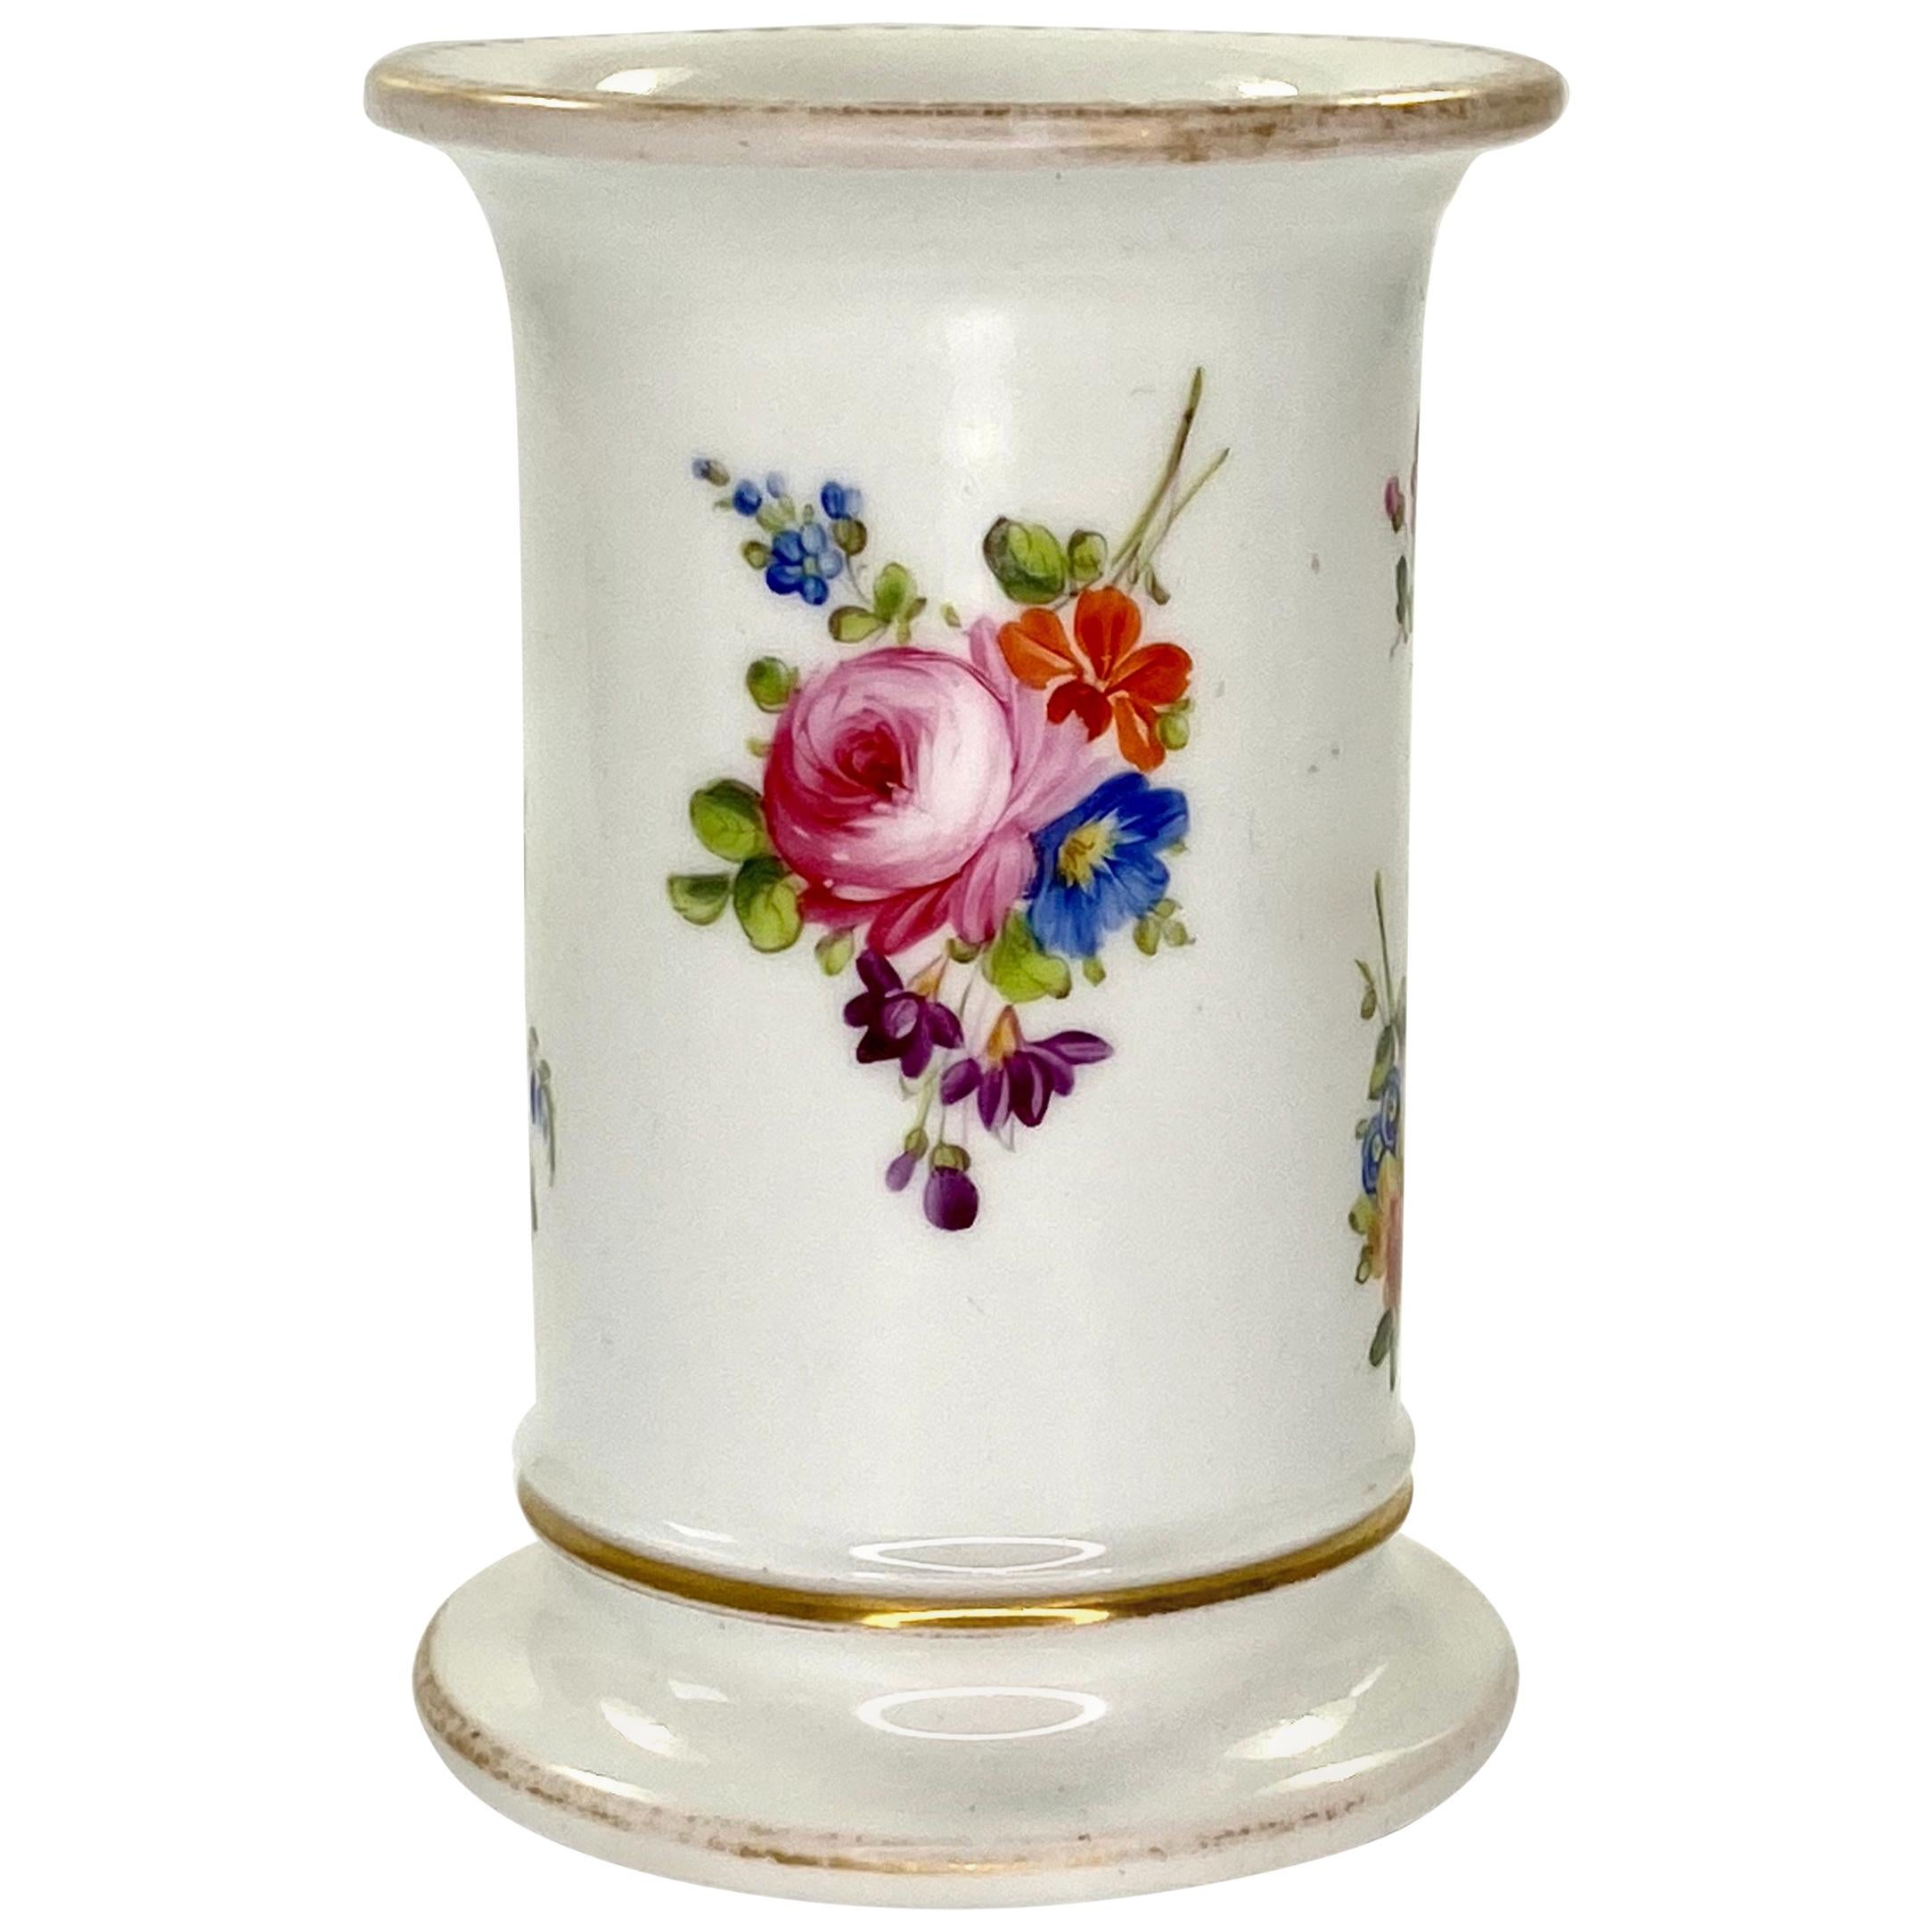 Swansea Porcelain Spill Vase, Flowers, circa 1815